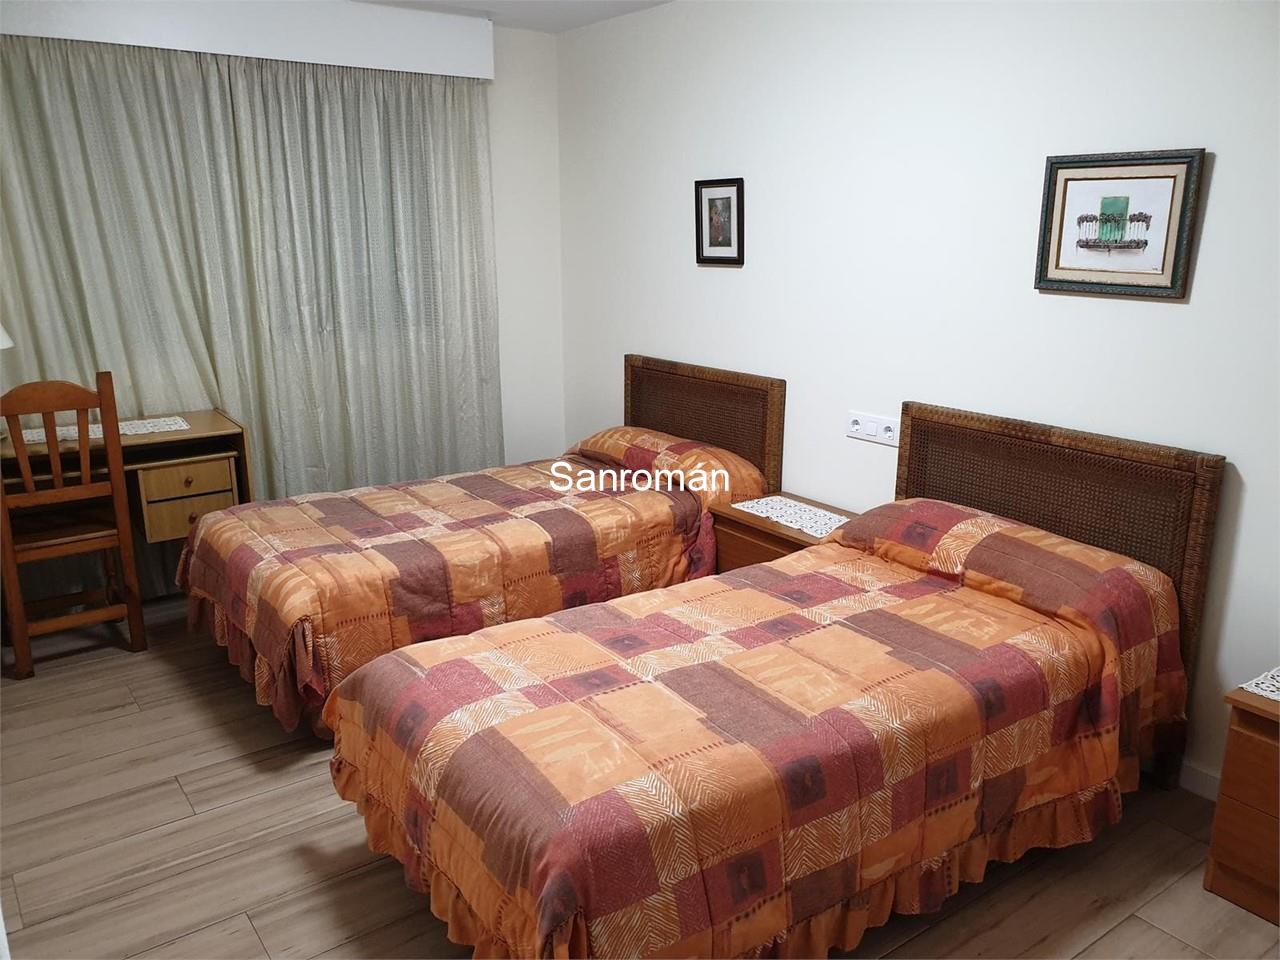 Foto 8 Apartamento de 2 dormitorios en Playa América - Nigrán. Alquiler temporada Septiembre/Junio.